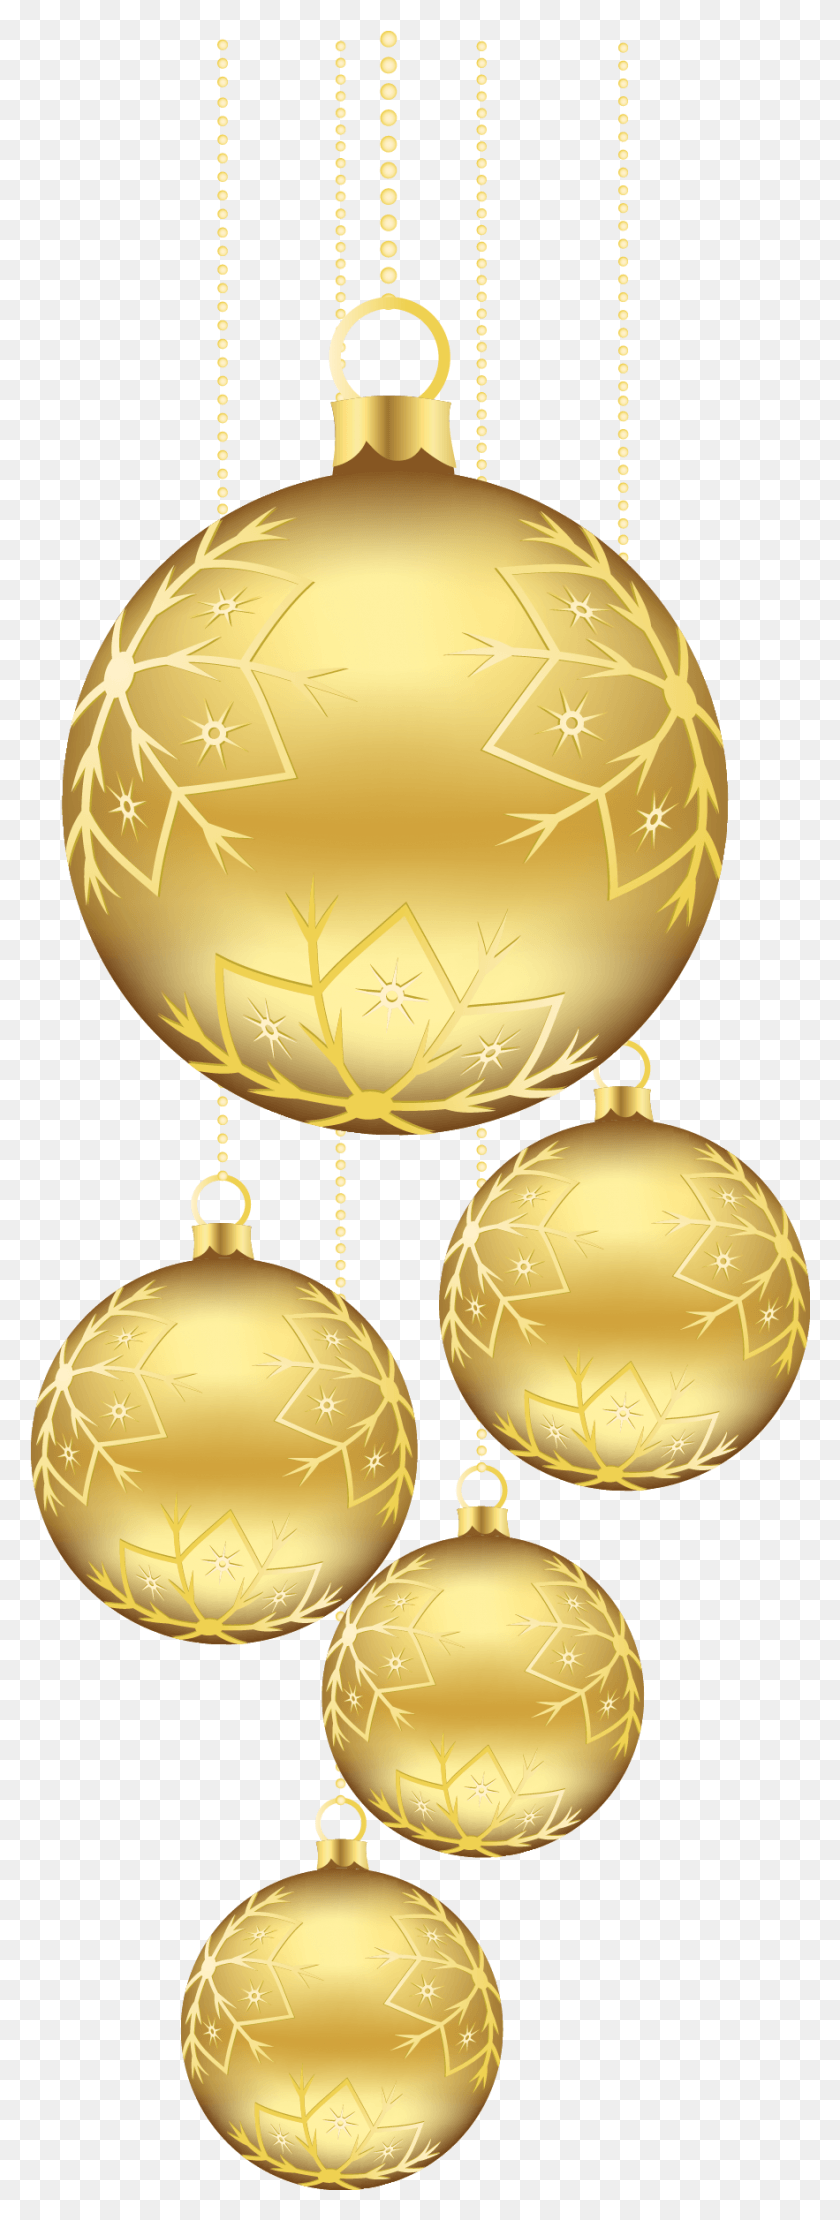 883x2446 Descargar Png / Adorno De Navidad De Oro X 2461 9, Iluminación, Lámpara, Medalla De Oro Hd Png